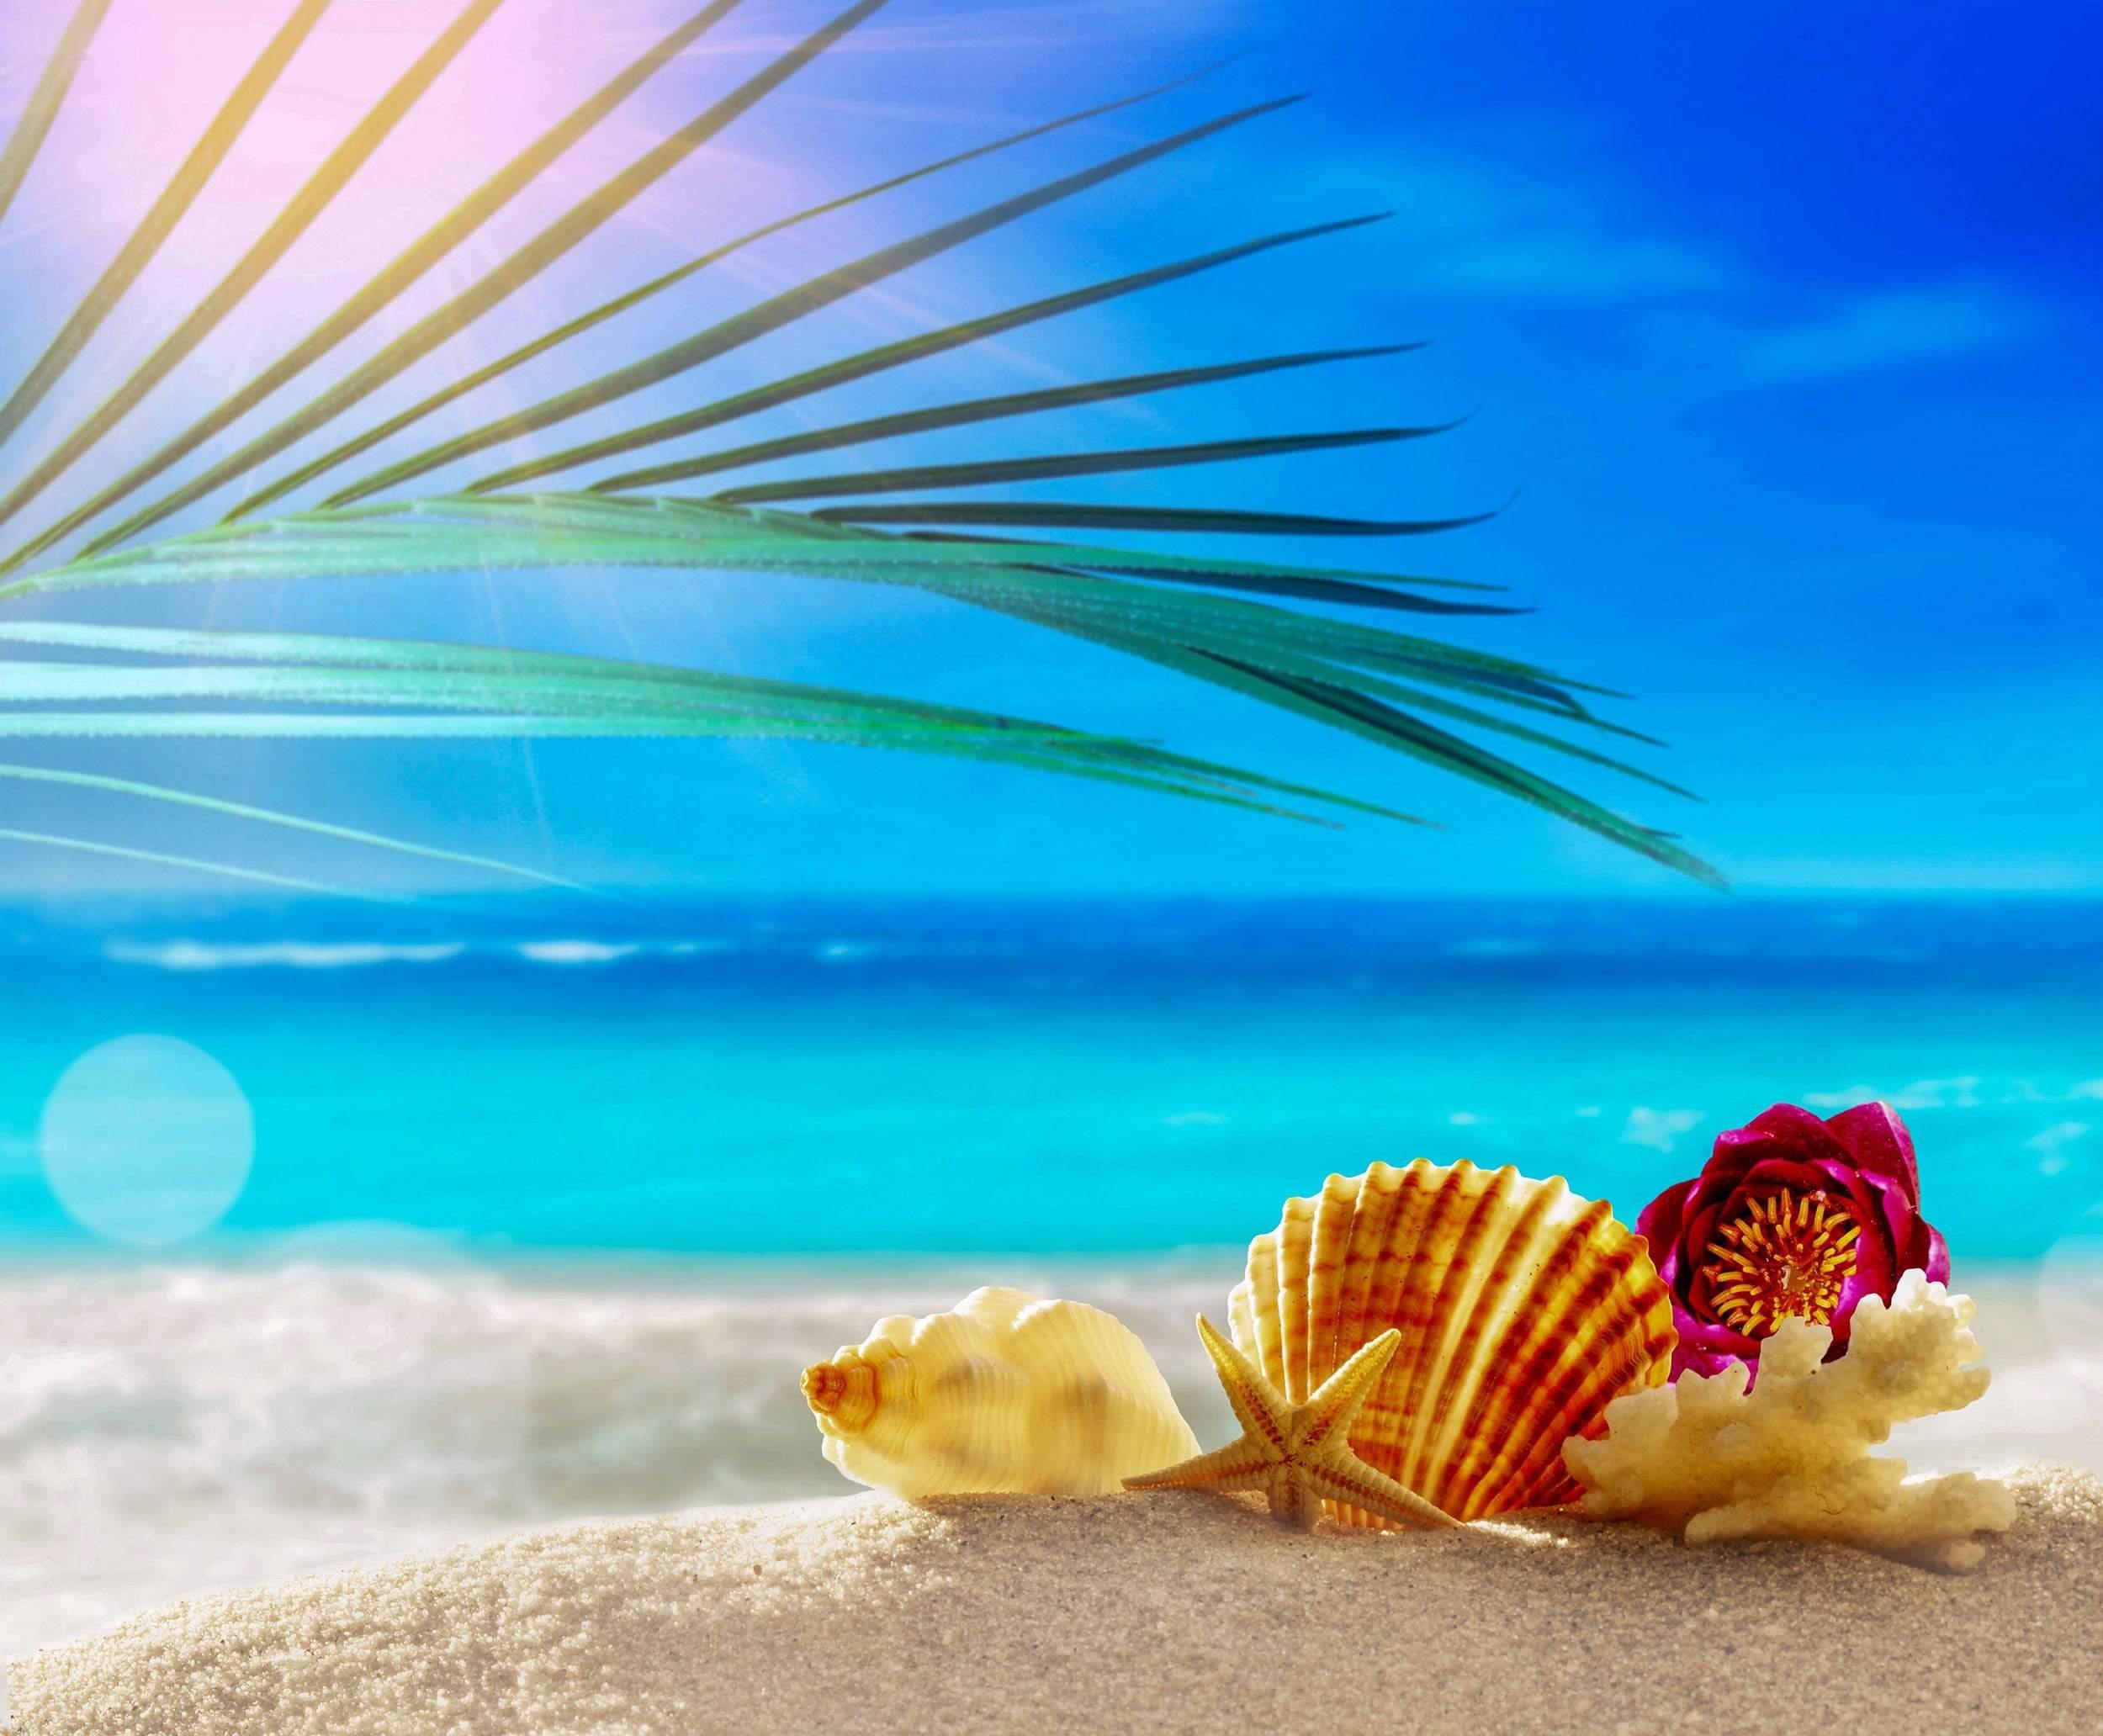 Sea shells on sand with palm leaf